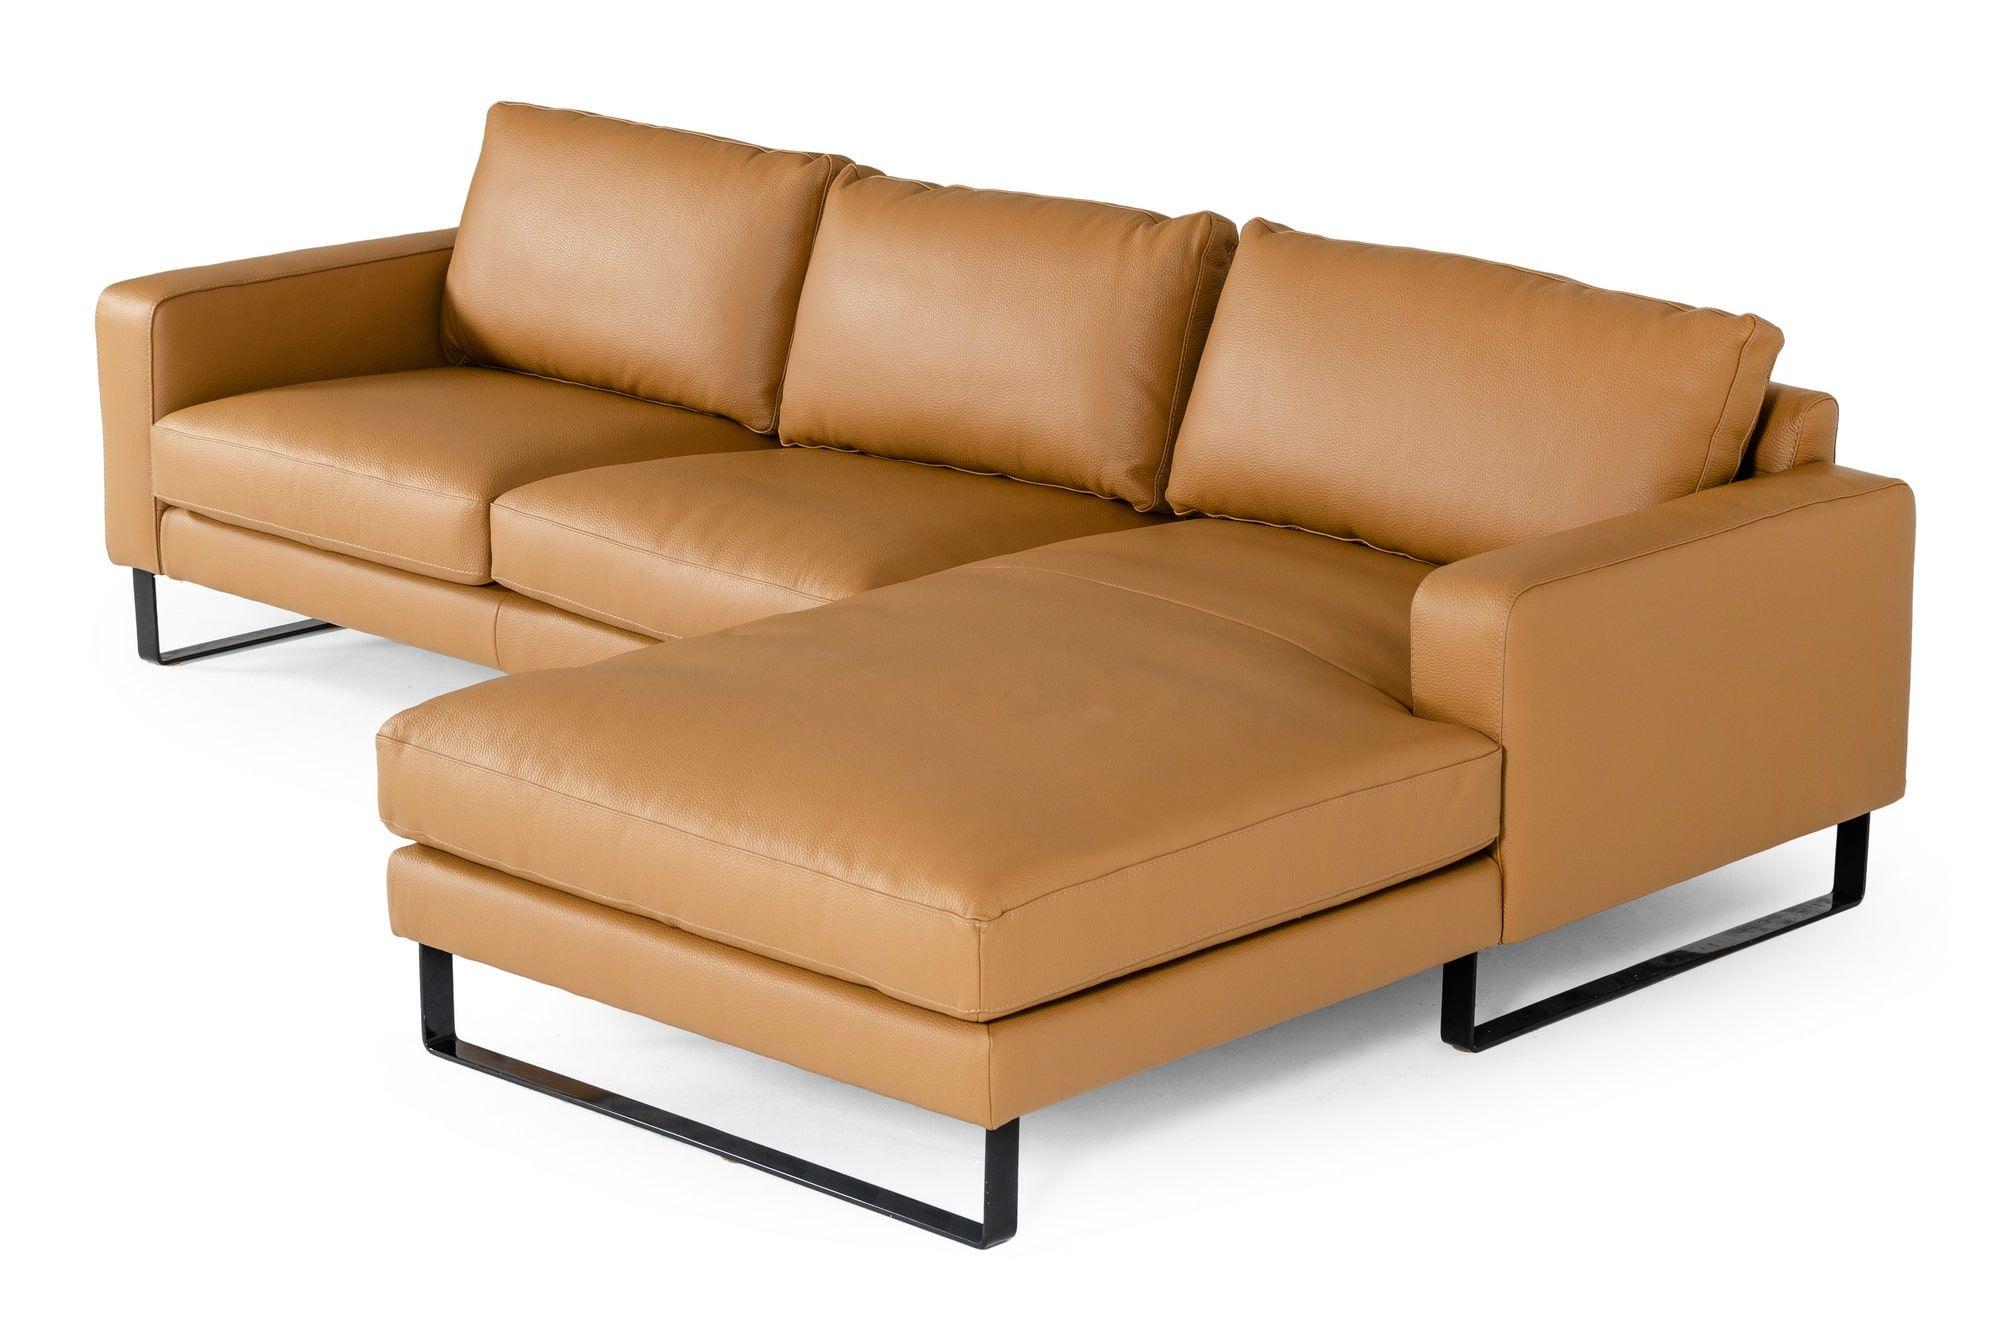 

    
VIG Furniture VGDDSHINE Sectional Sofa Cognac VGDDSHINE
